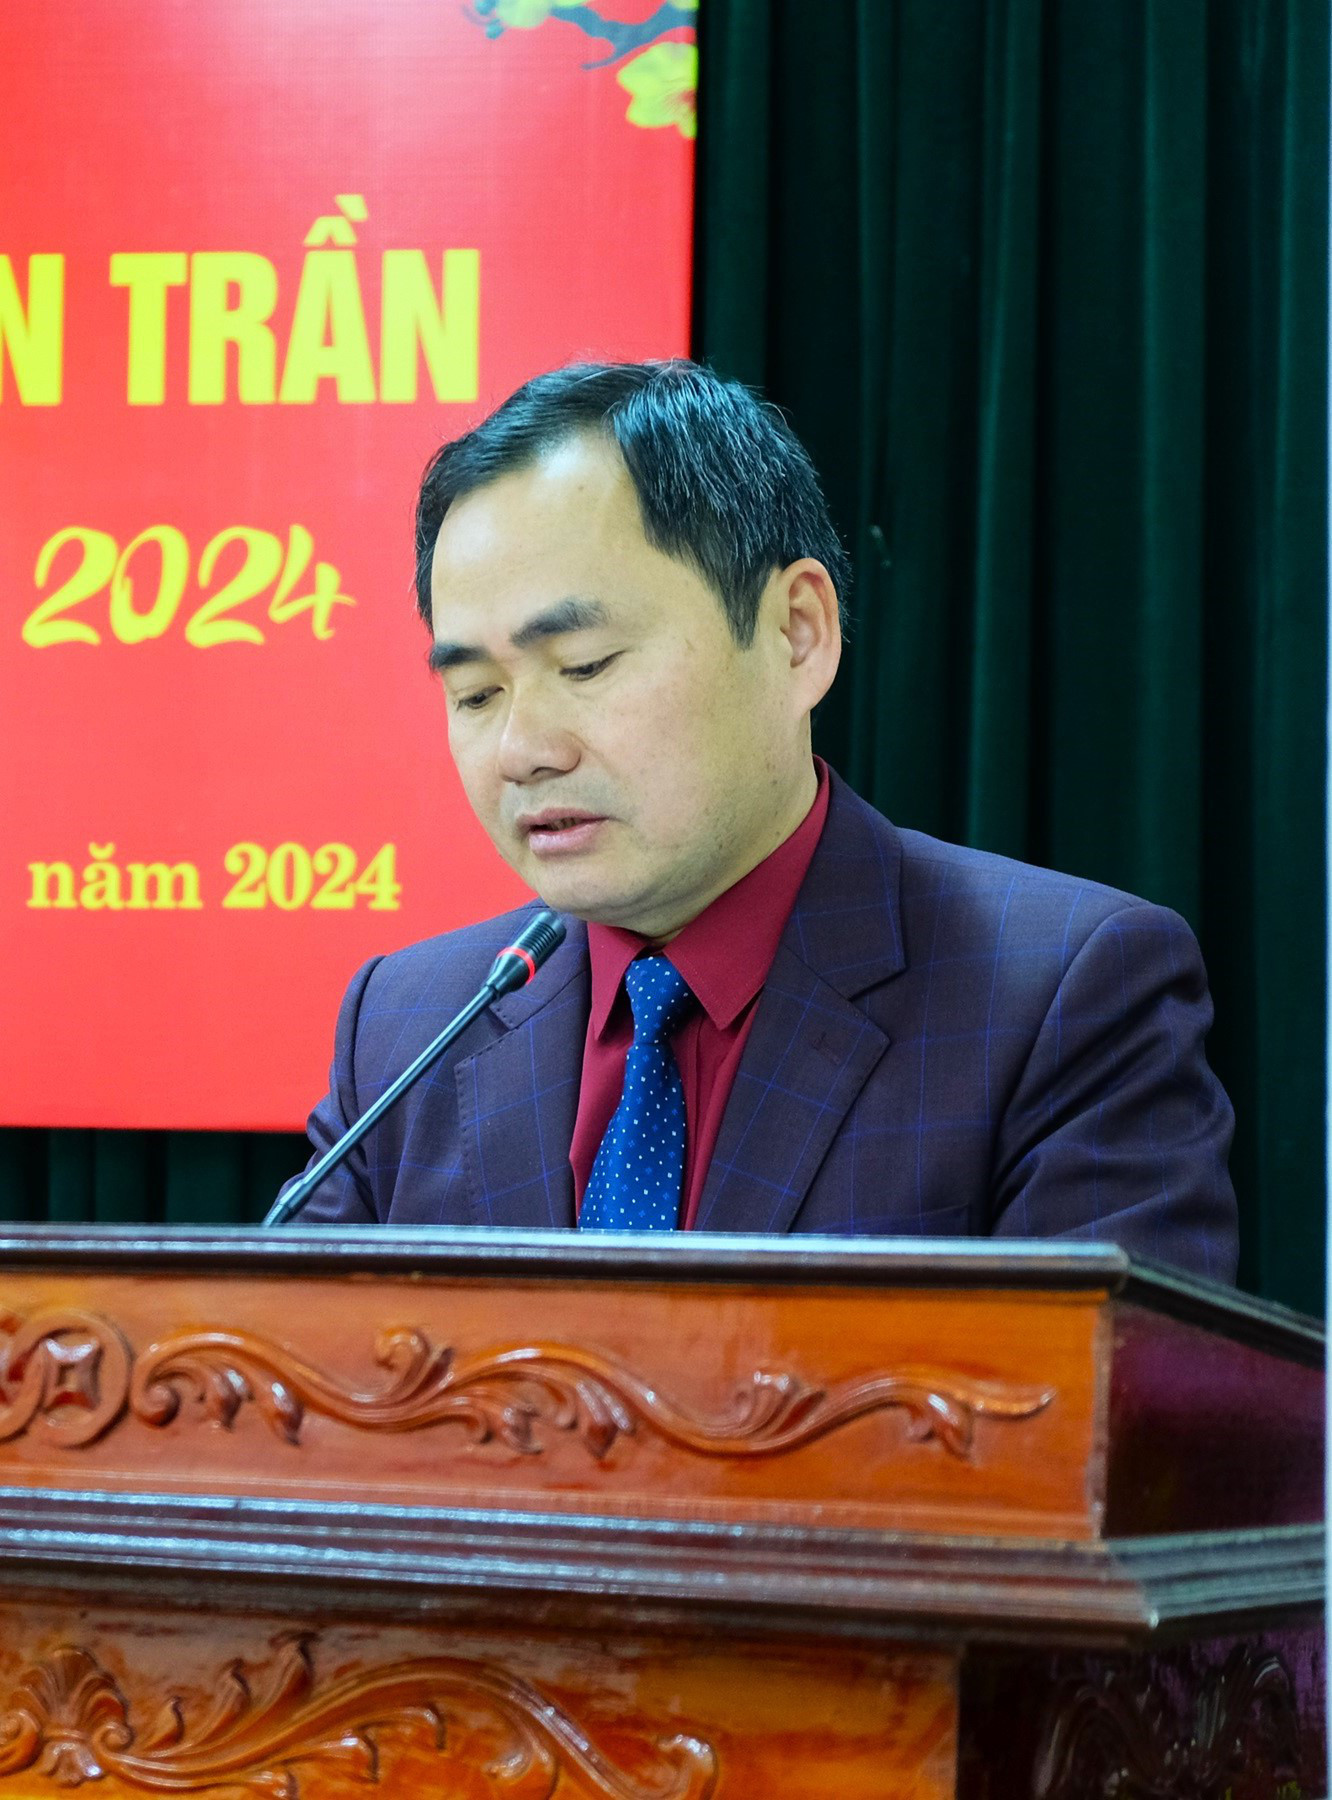 Ông Nguyễn Đức Bình - trưởng Ban quản lý di tích đền Trần - thông tin về lễ hội - Ảnh: ĐẬU DUNG